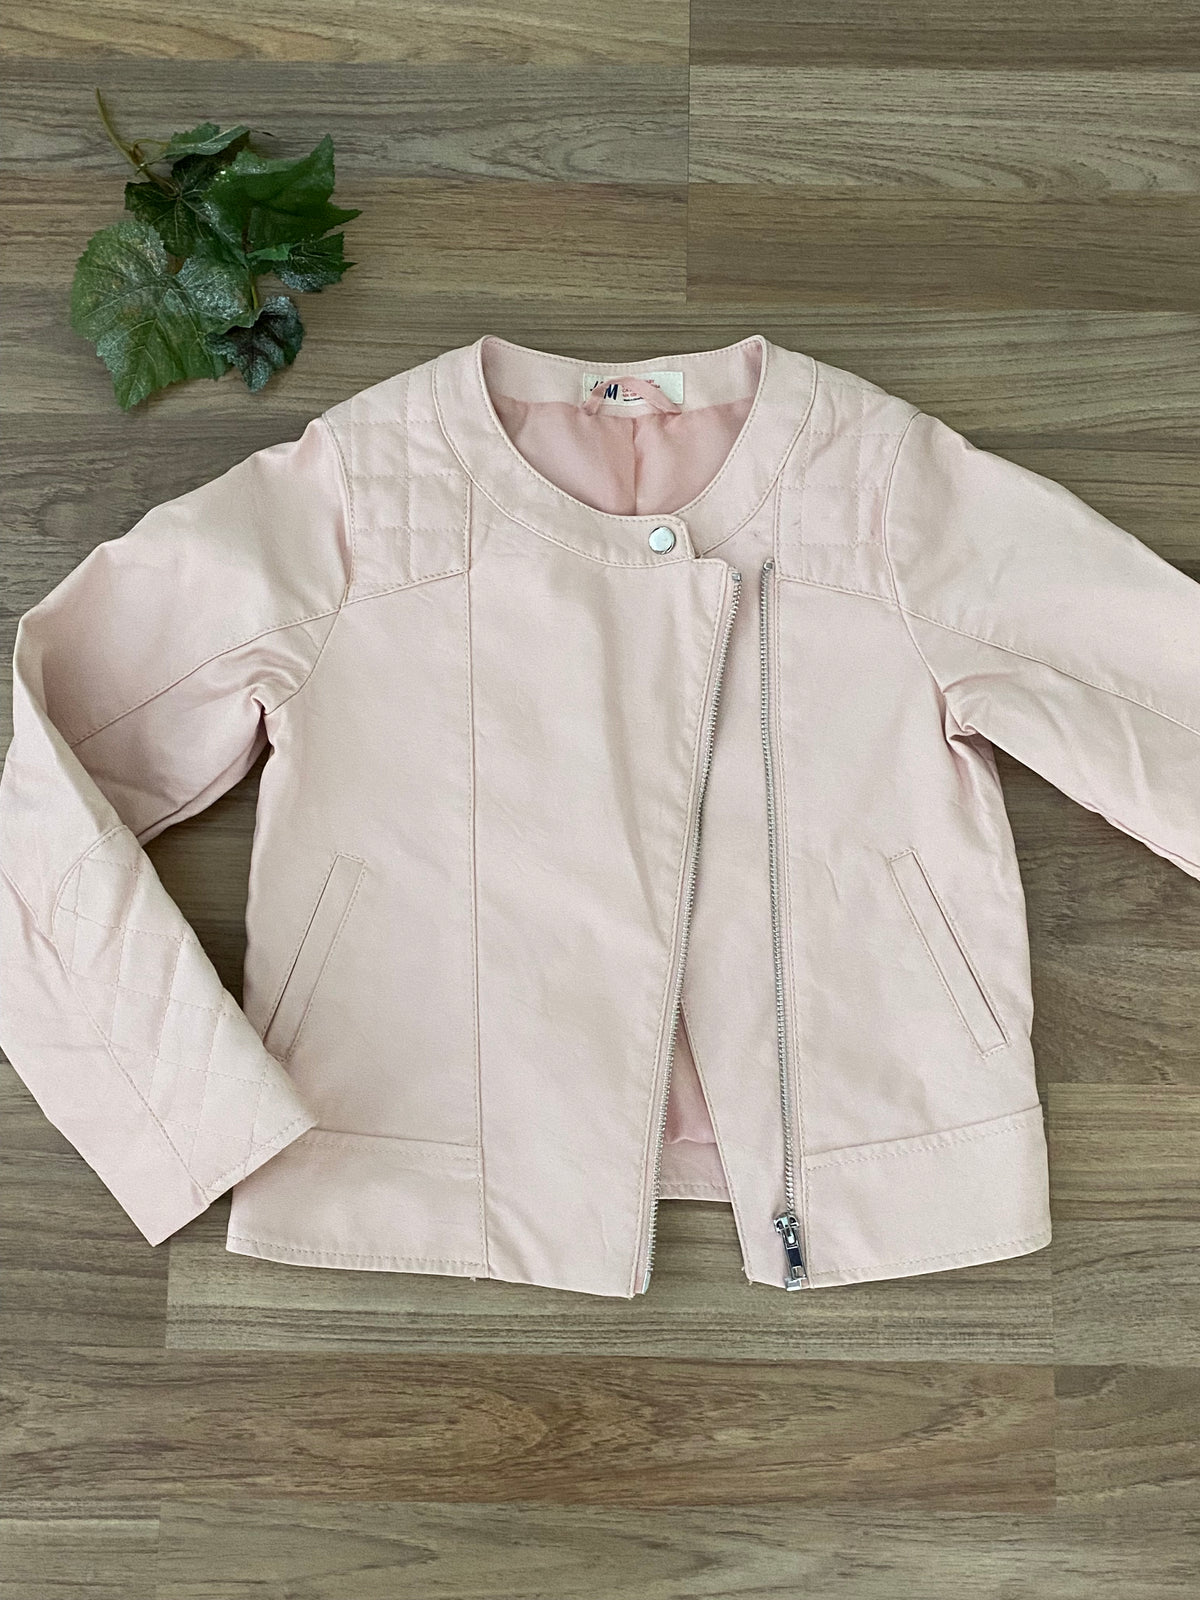 Full Zip Up Jacket (Girls Size 7-8)